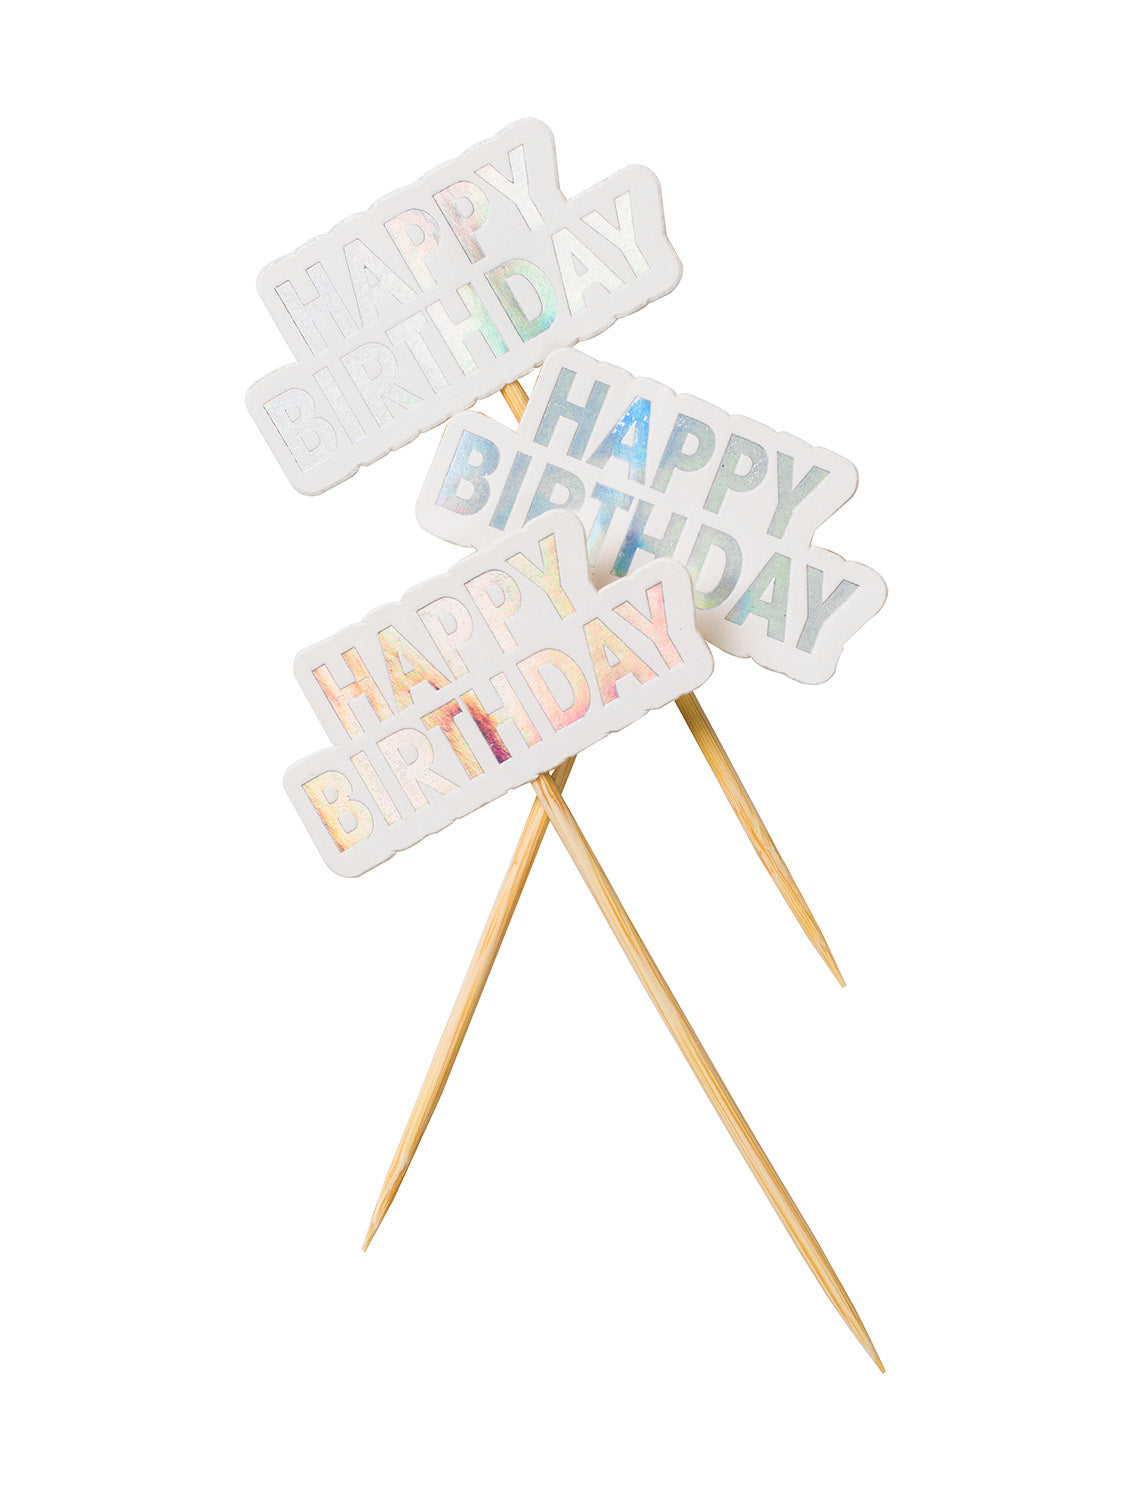 Cake toppers "HAPPY BIRTHDAY", 10st, silver DesignHouse95 - Barnkalas Grossist - Festdukning Grossist - Engångsartiklar, Student, Jul, Nyår, Fest, Kalas